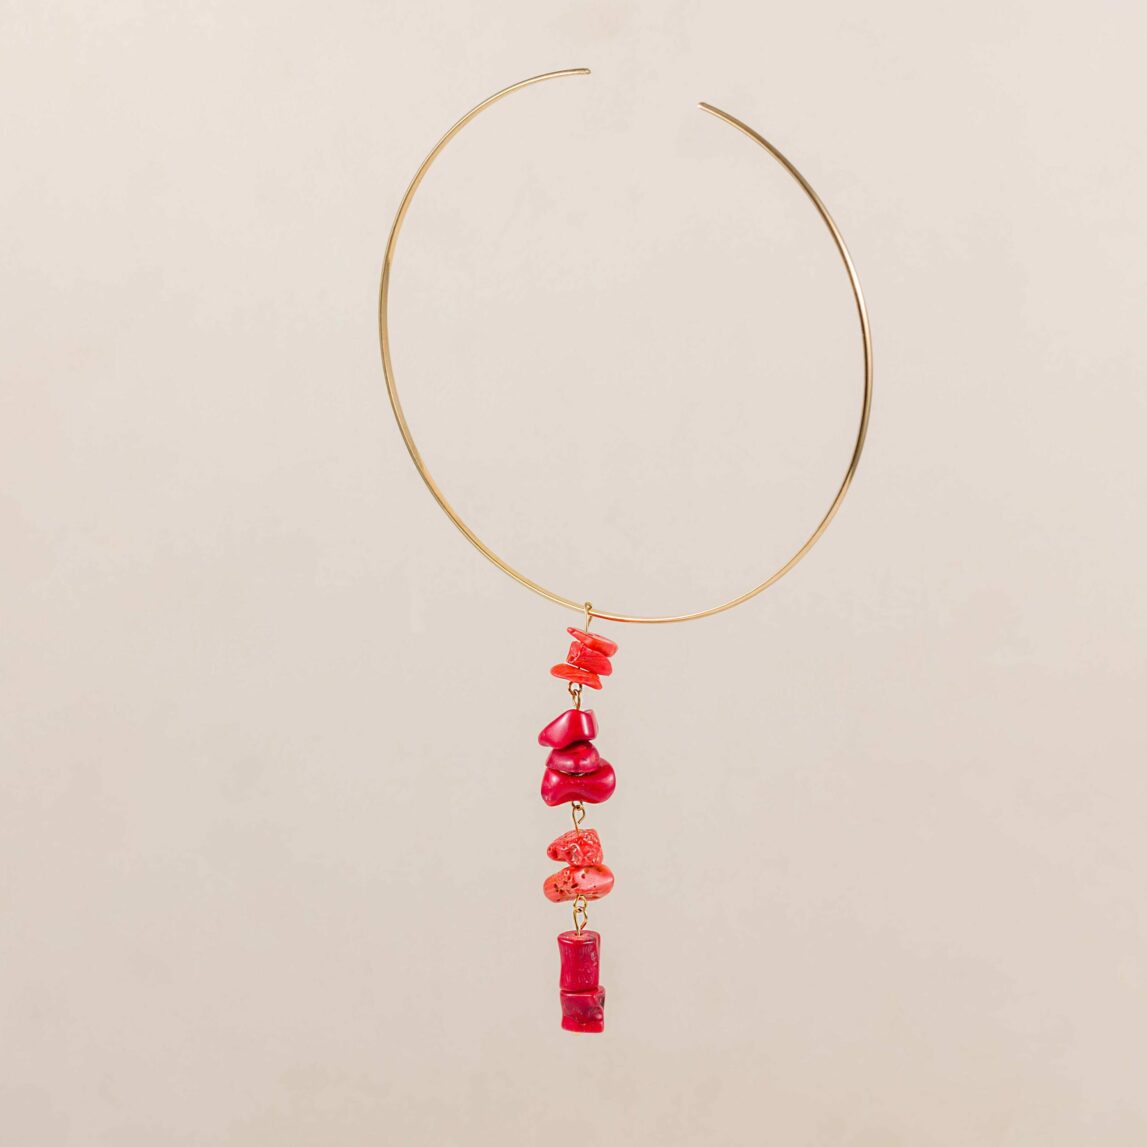 La cadena con charm de corales Marta DW es una joya perfecta para autoregalarte, es un collar de raíz de coral muy llamativo y versátil para tus looks.